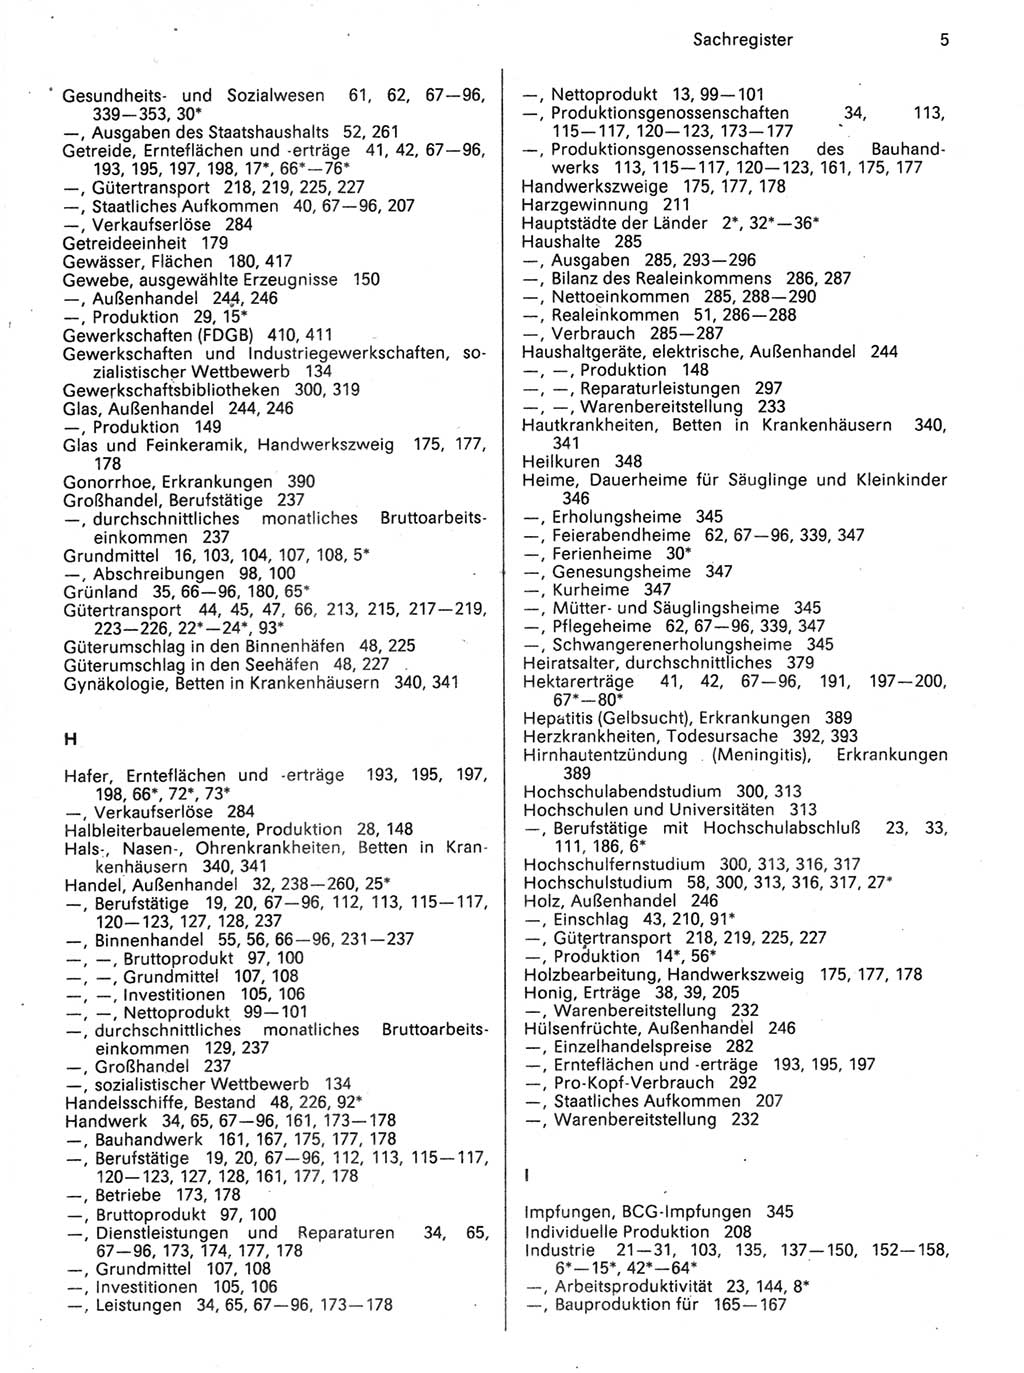 Statistisches Jahrbuch der Deutschen Demokratischen Republik (DDR) 1989, Seite 5 (Stat. Jb. DDR 1989, S. 5)